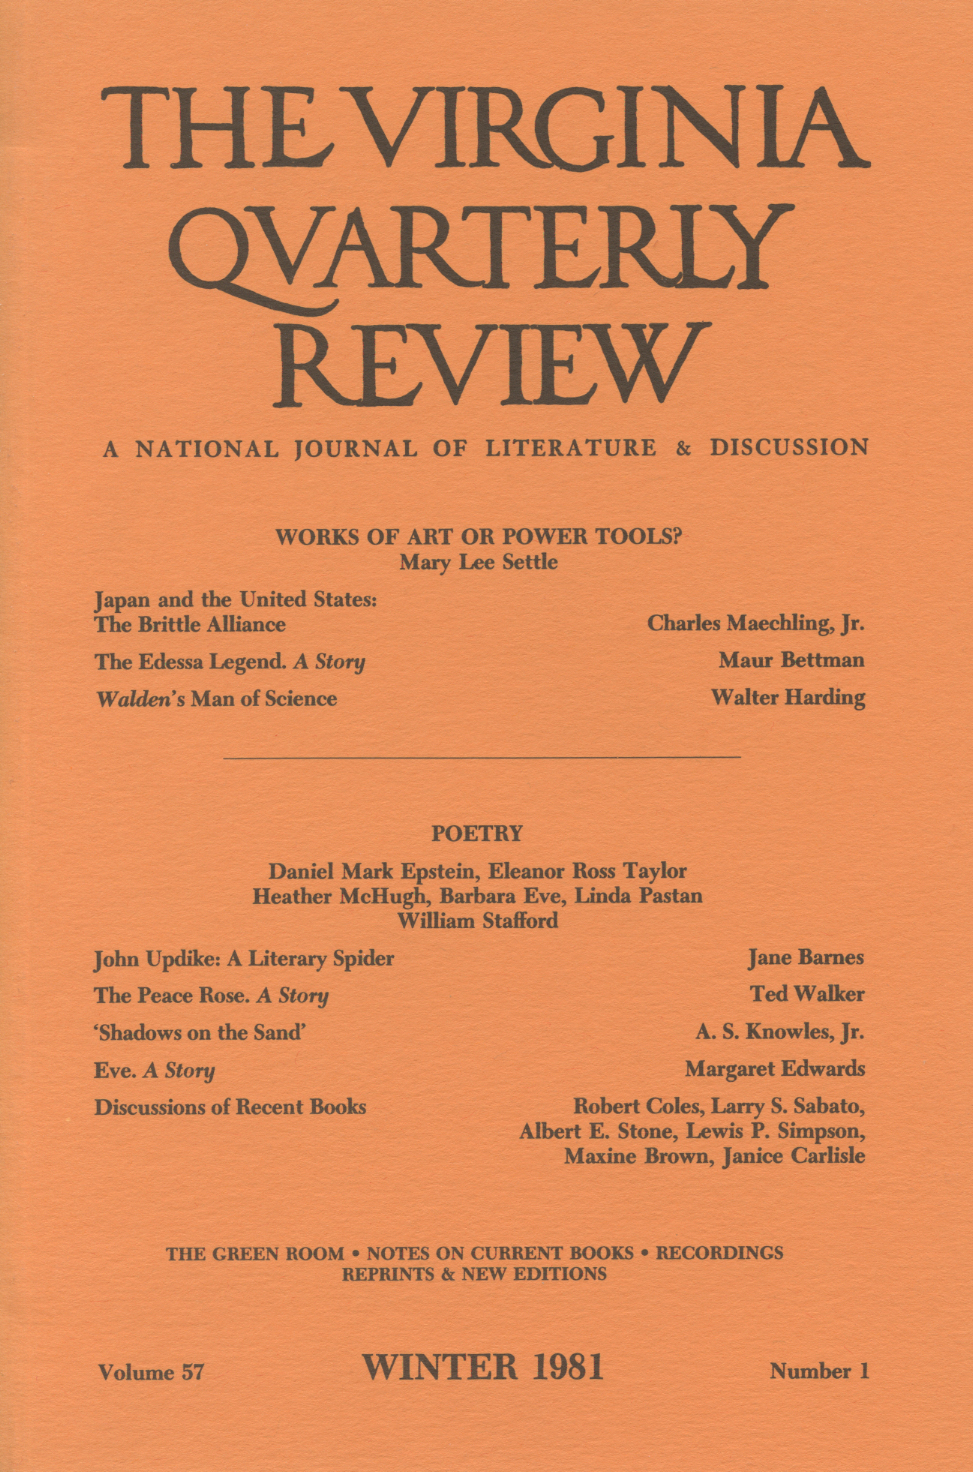 Virginia Quarterly Review, Winter 1981 cover